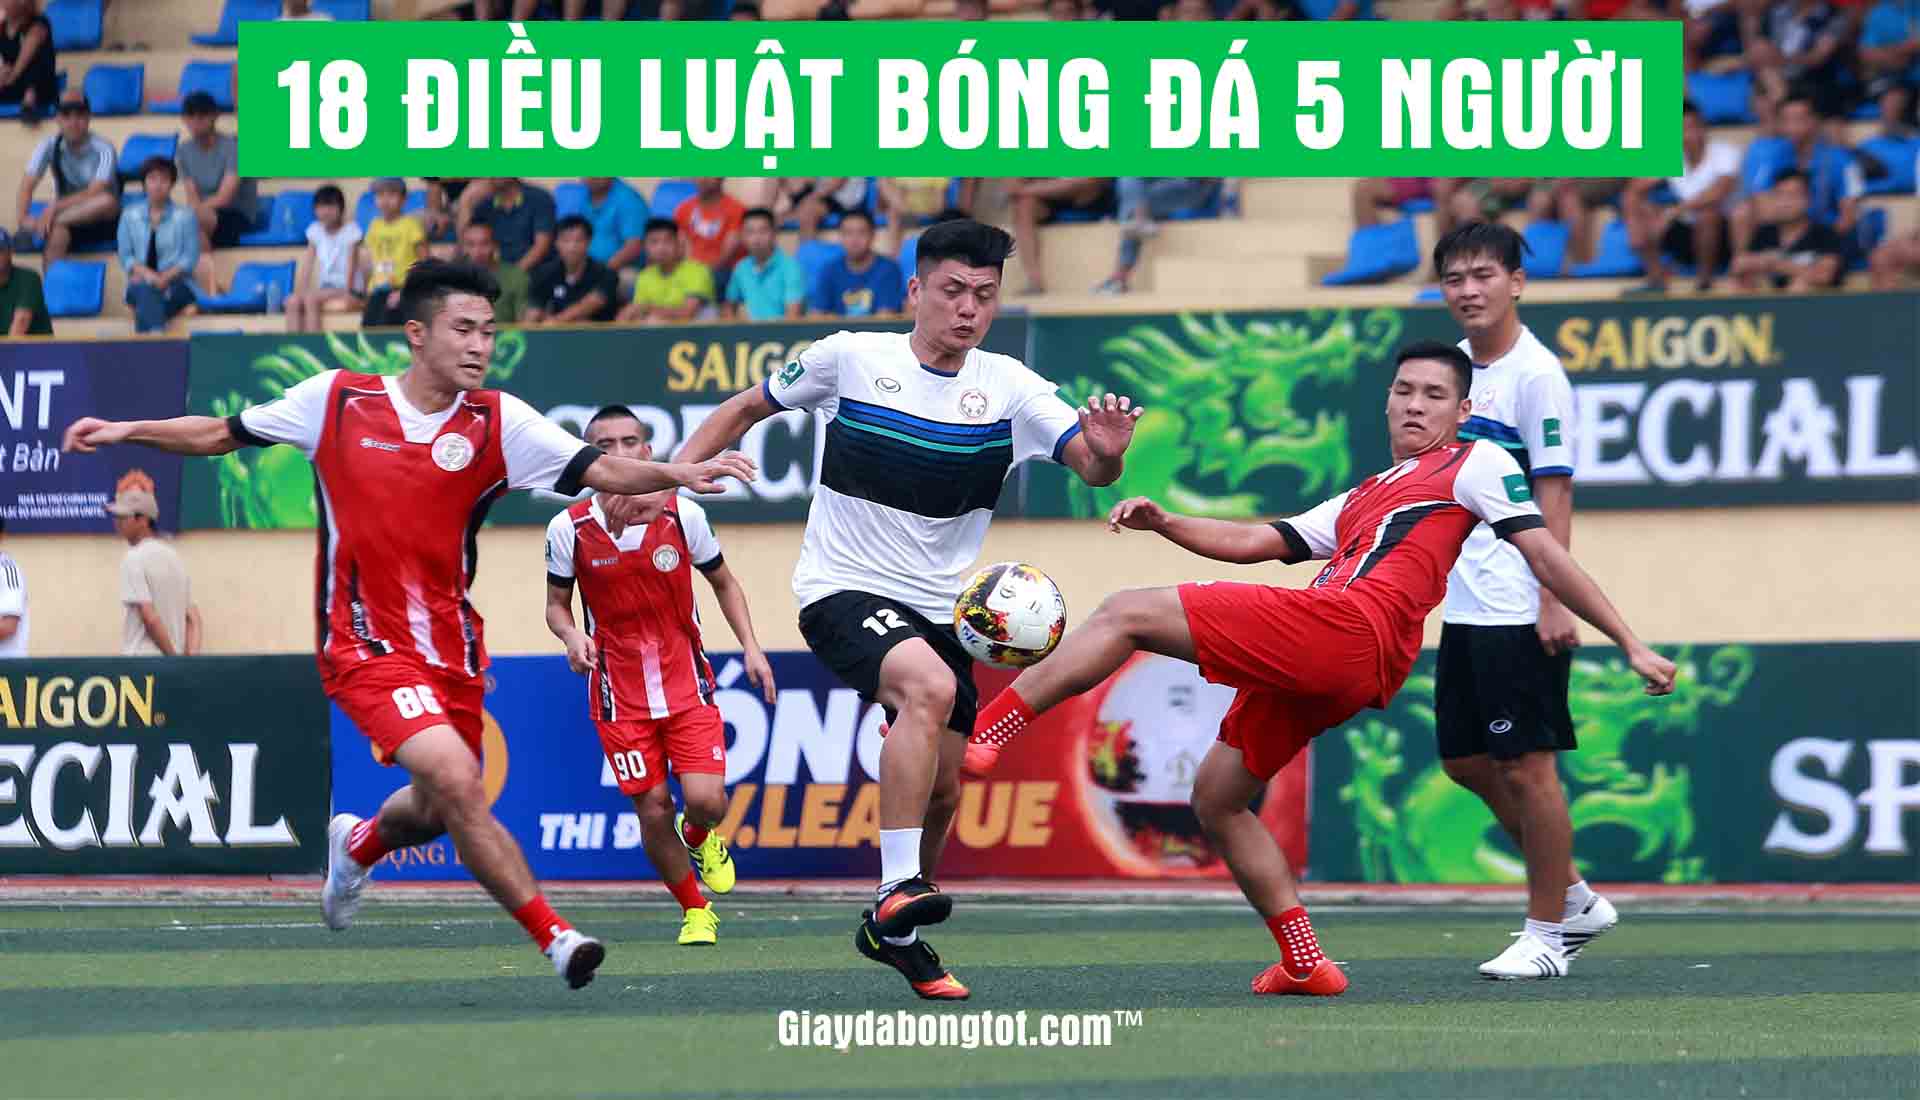 Việt Nam có cần xây thêm một SVĐ hiện đại Bóng đá tiến lên sân vận động  đi lùi